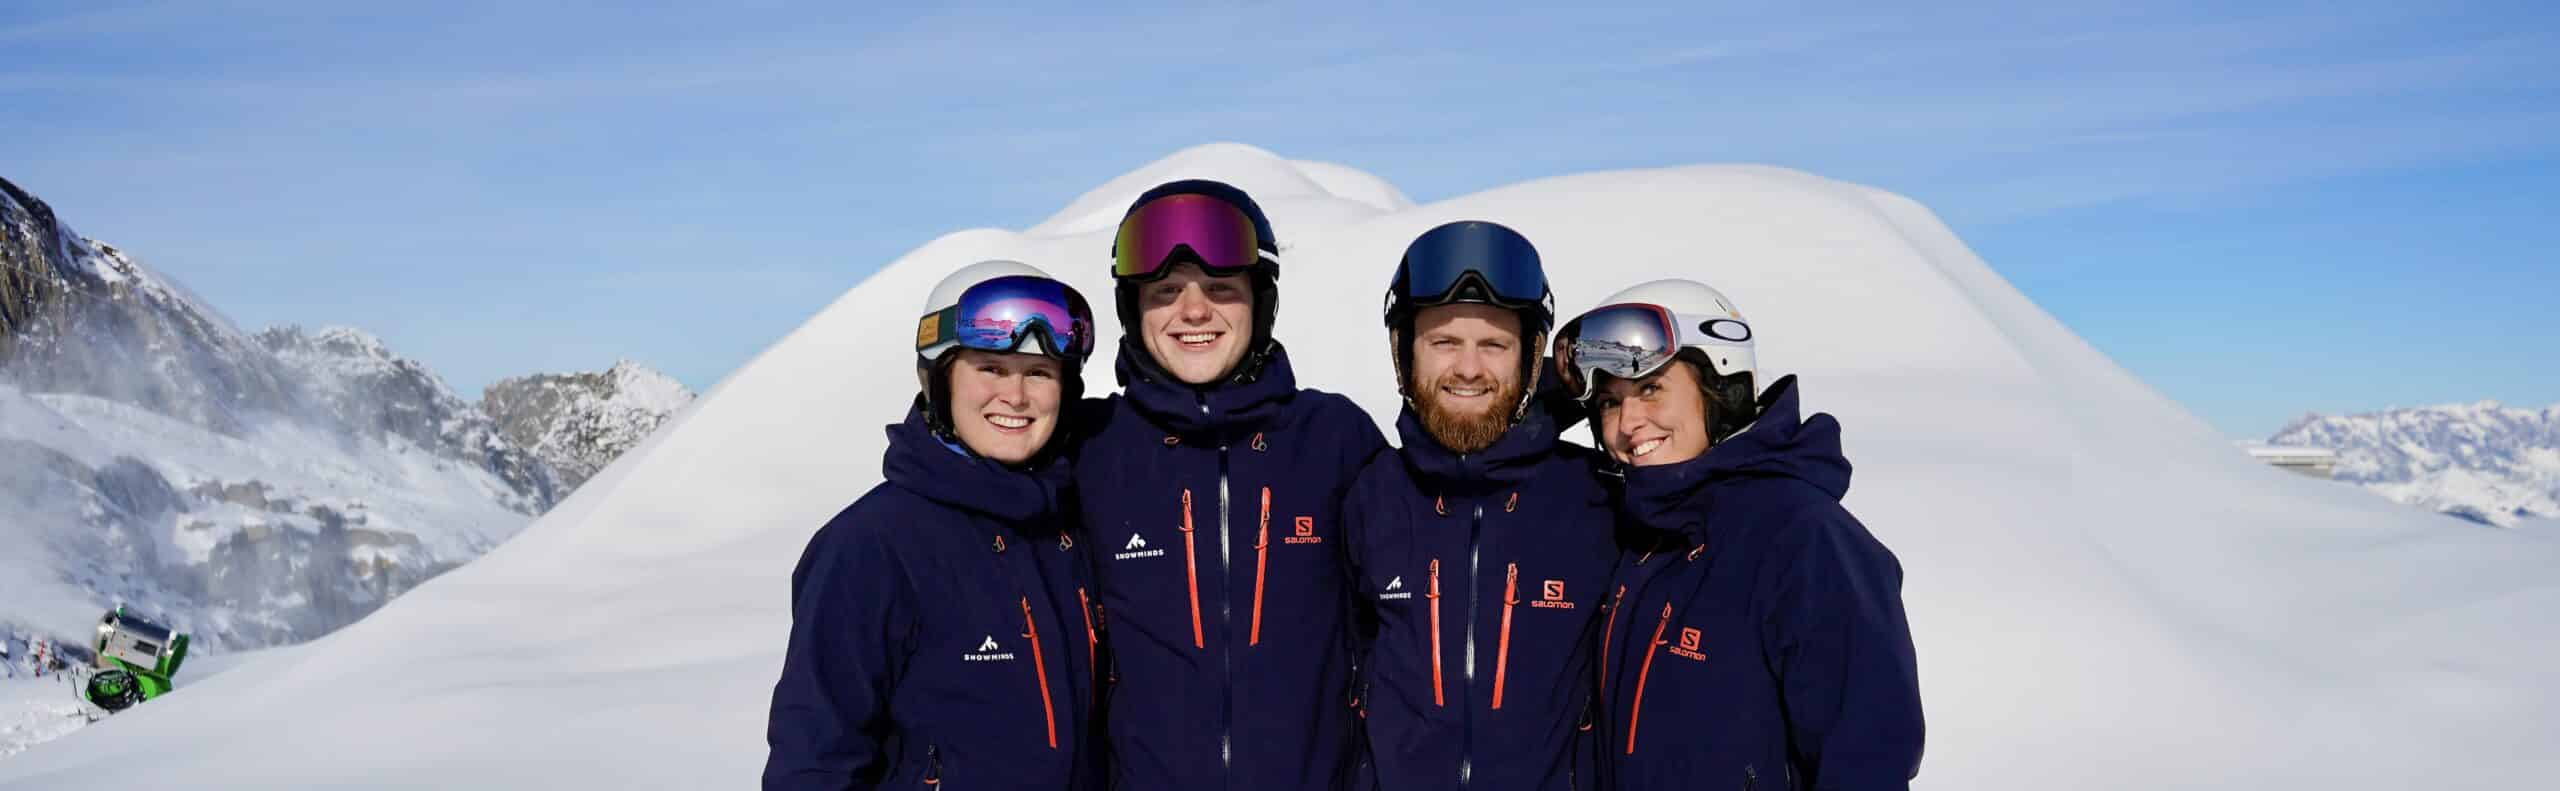 Snowminds Team Skileraar